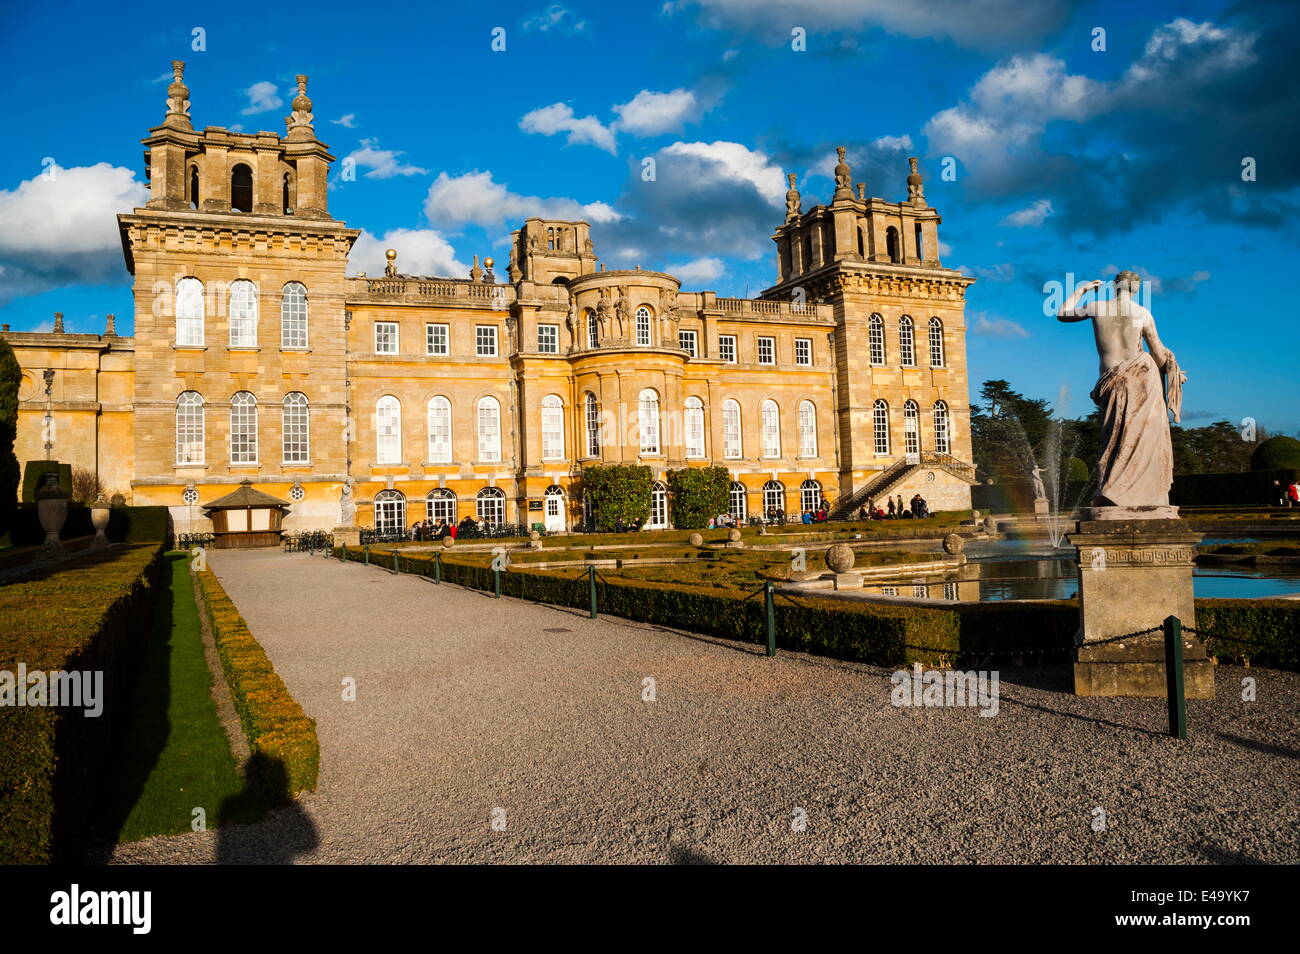 Blenheim Palace, UNESCO World Heritage Site, Woodstock, Oxfordshire, England, United Kingdom, Europe Stock Photo